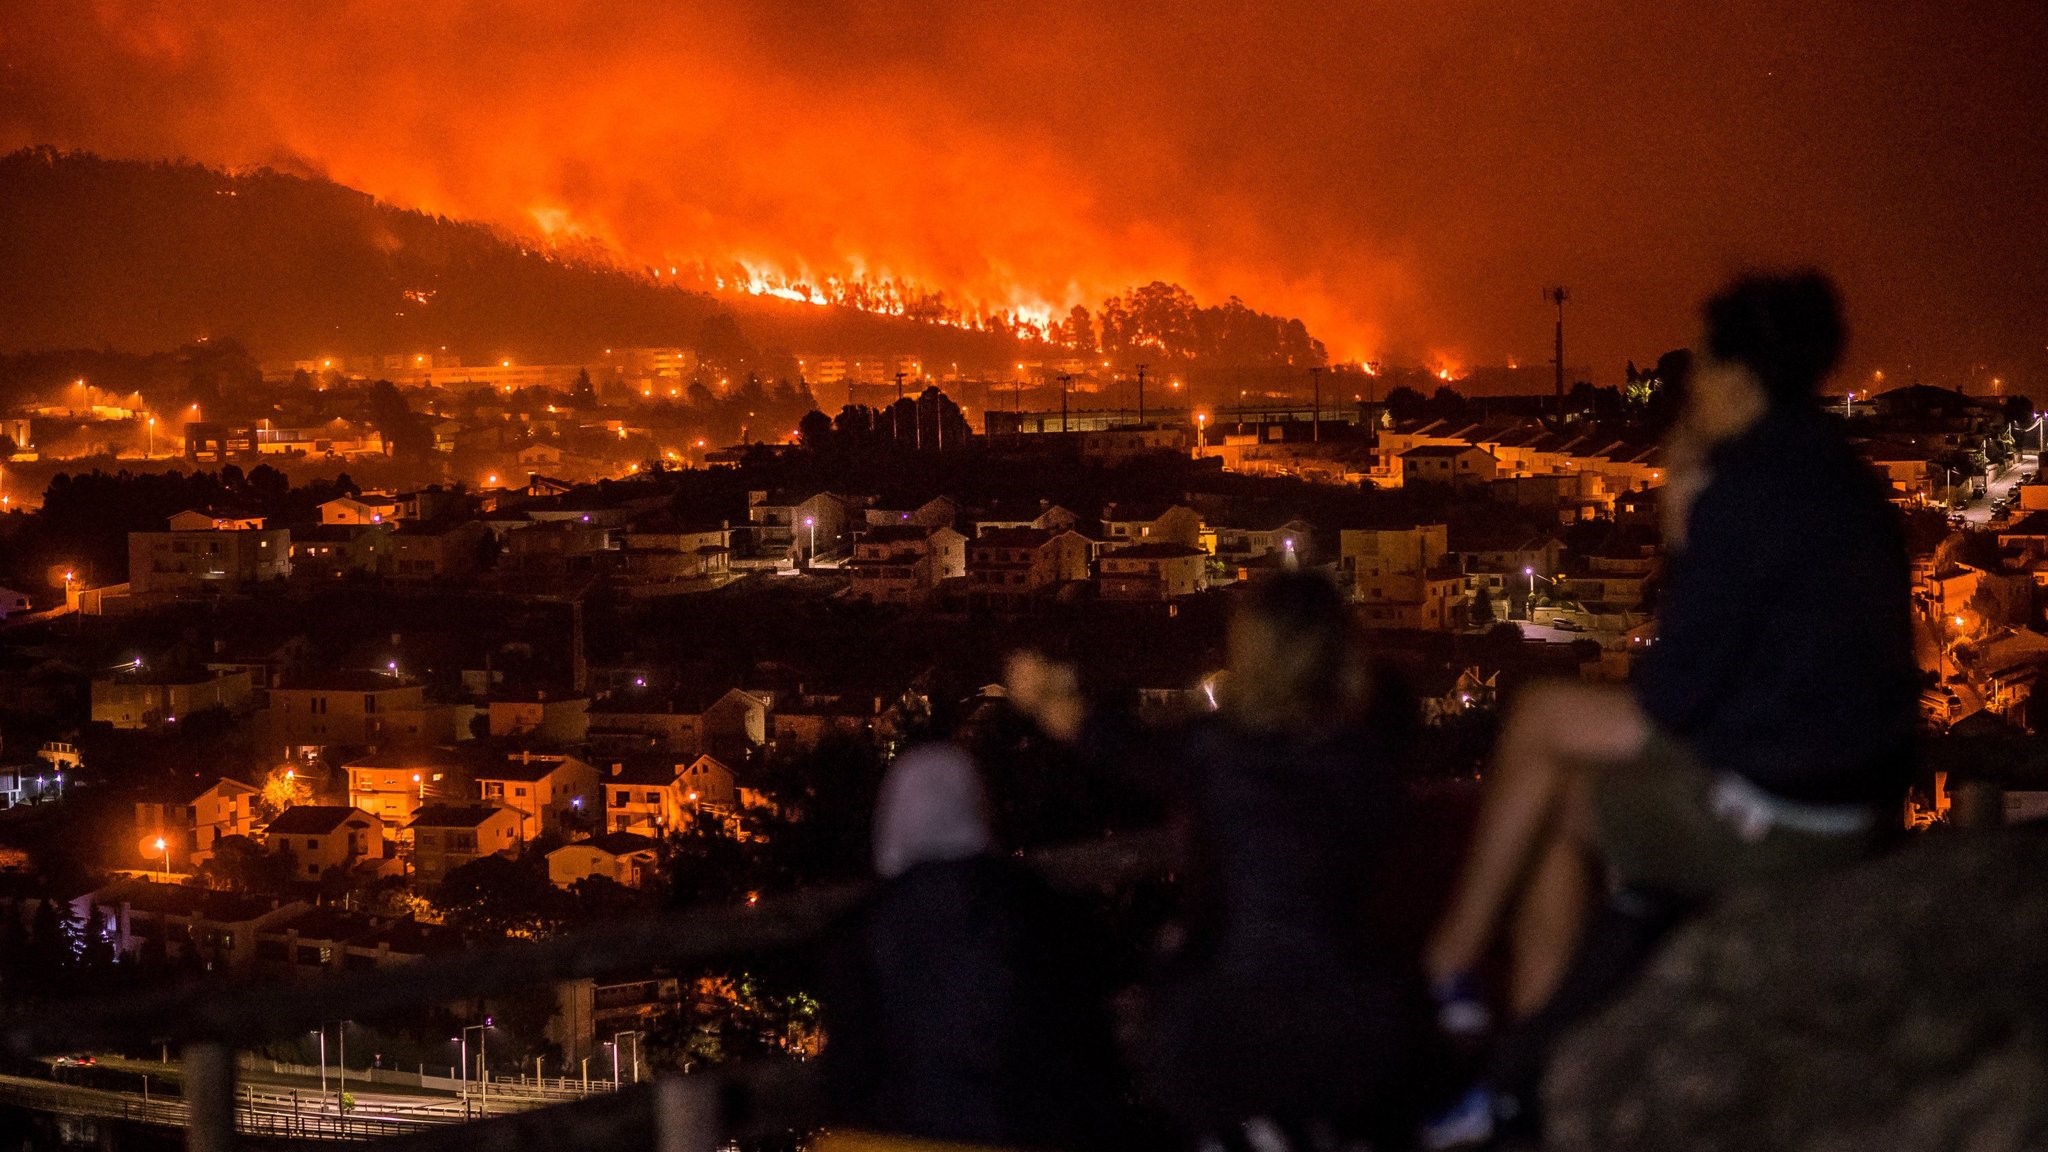 ポルトガルの山火事 厳戒態勢に移行 今年3度目の猛烈な熱波接近 森林への立ち入りと火花が発生する機械の使用禁止